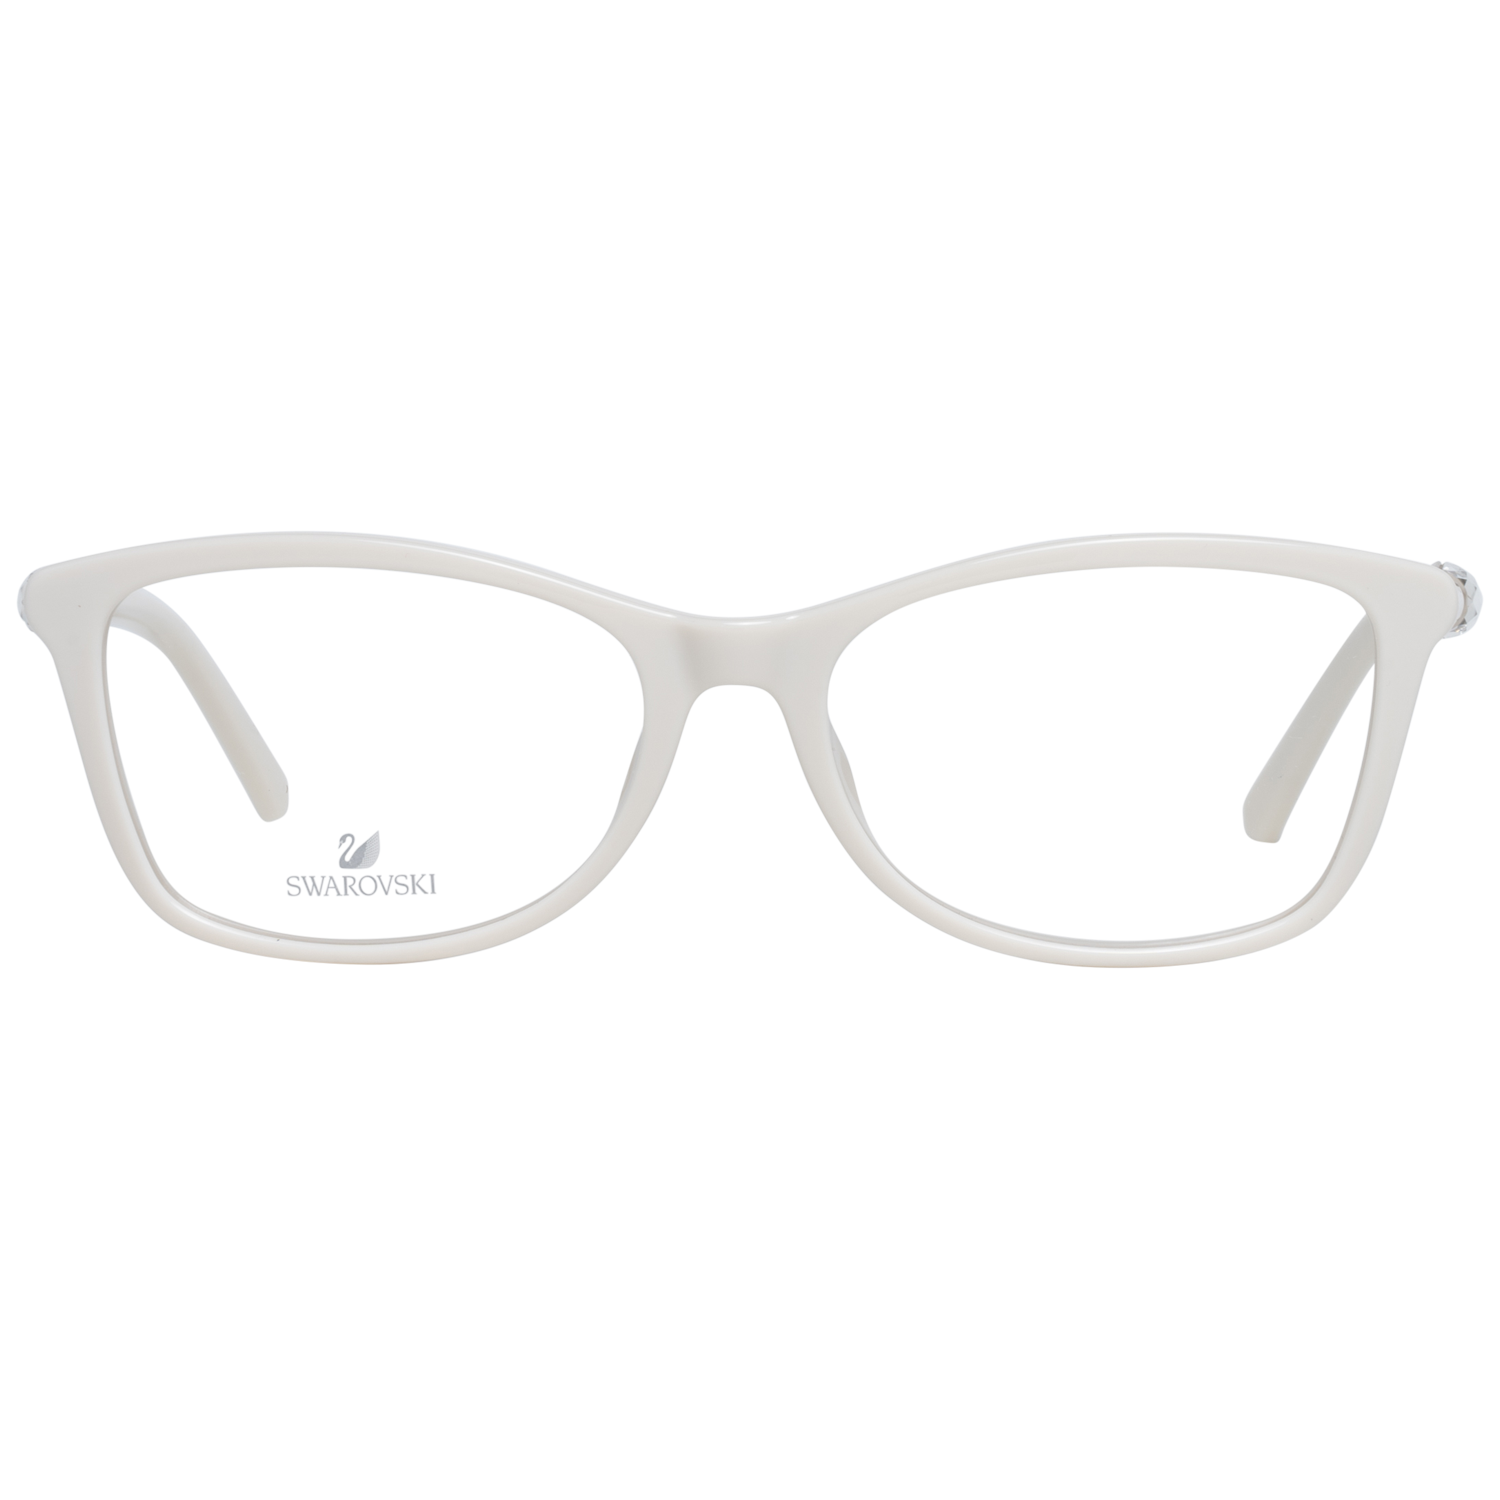 Swarovski Frames Swarovski Women Glasses Optical Frame SK5336 024 53 Eyeglasses Eyewear UK USA Australia 